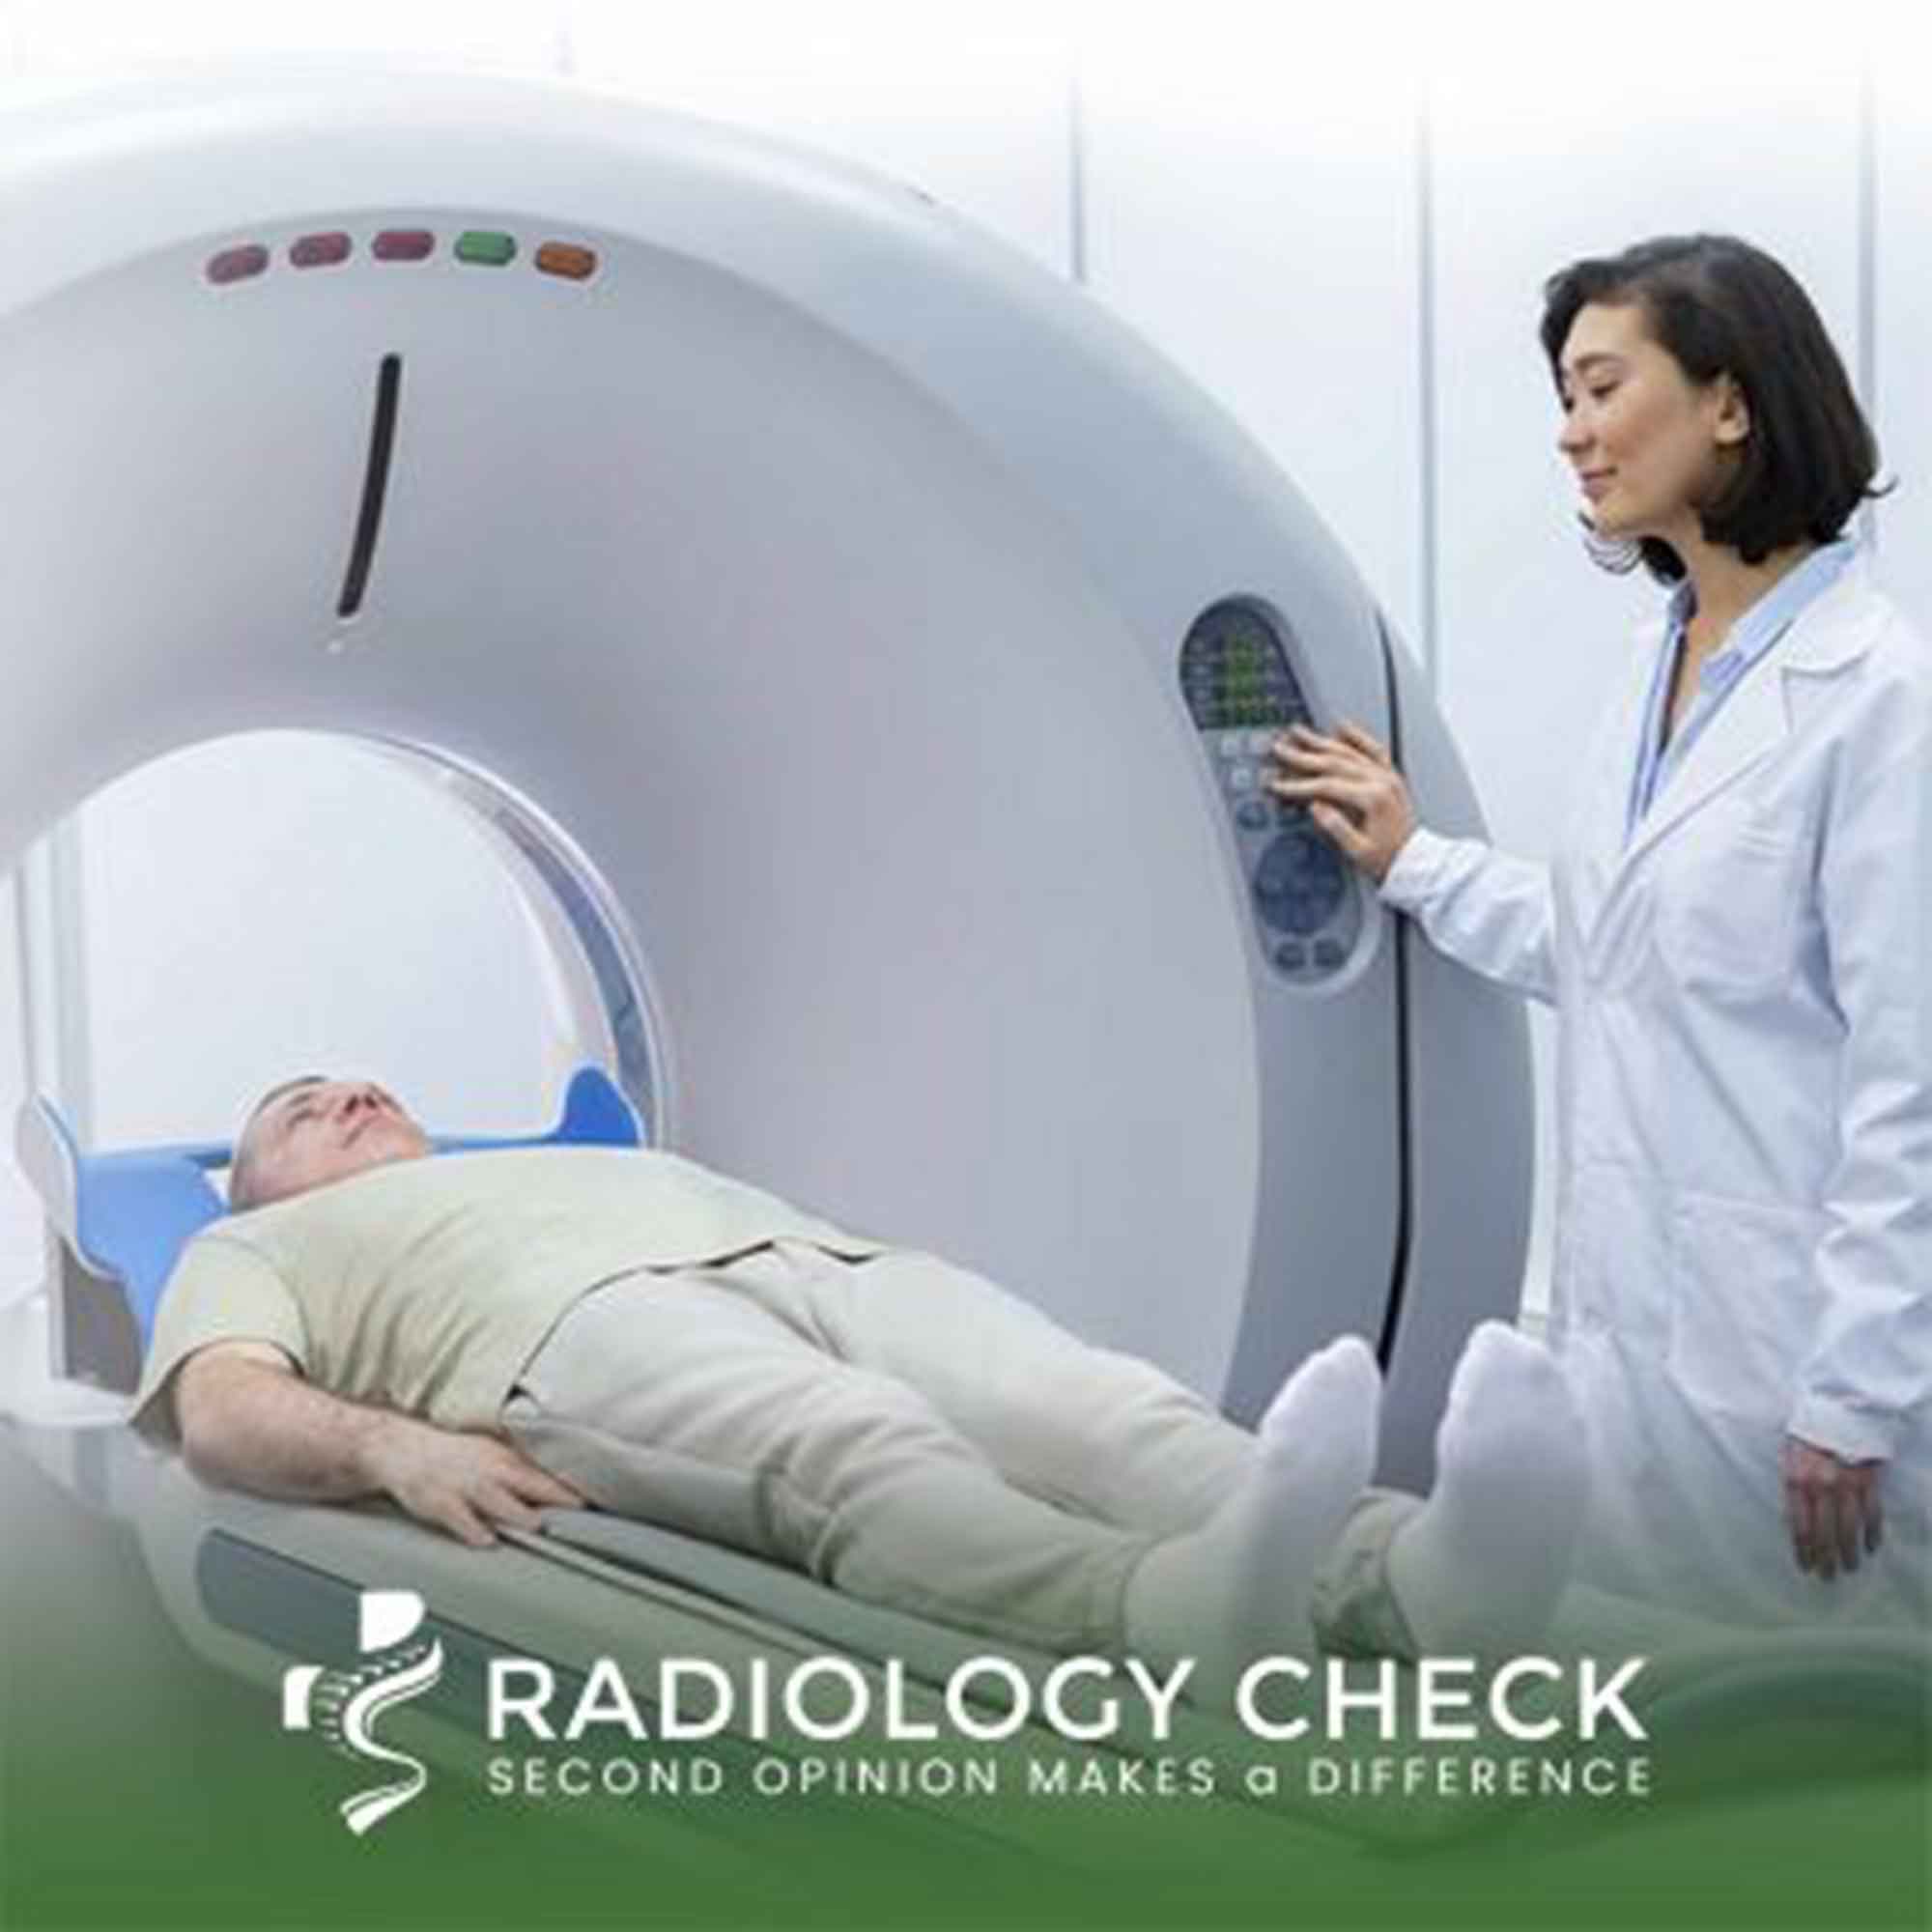 Radiologycheck.com: Schweizer Innovation eröffnet neue Ära der radiologischen Zweitmeinungen